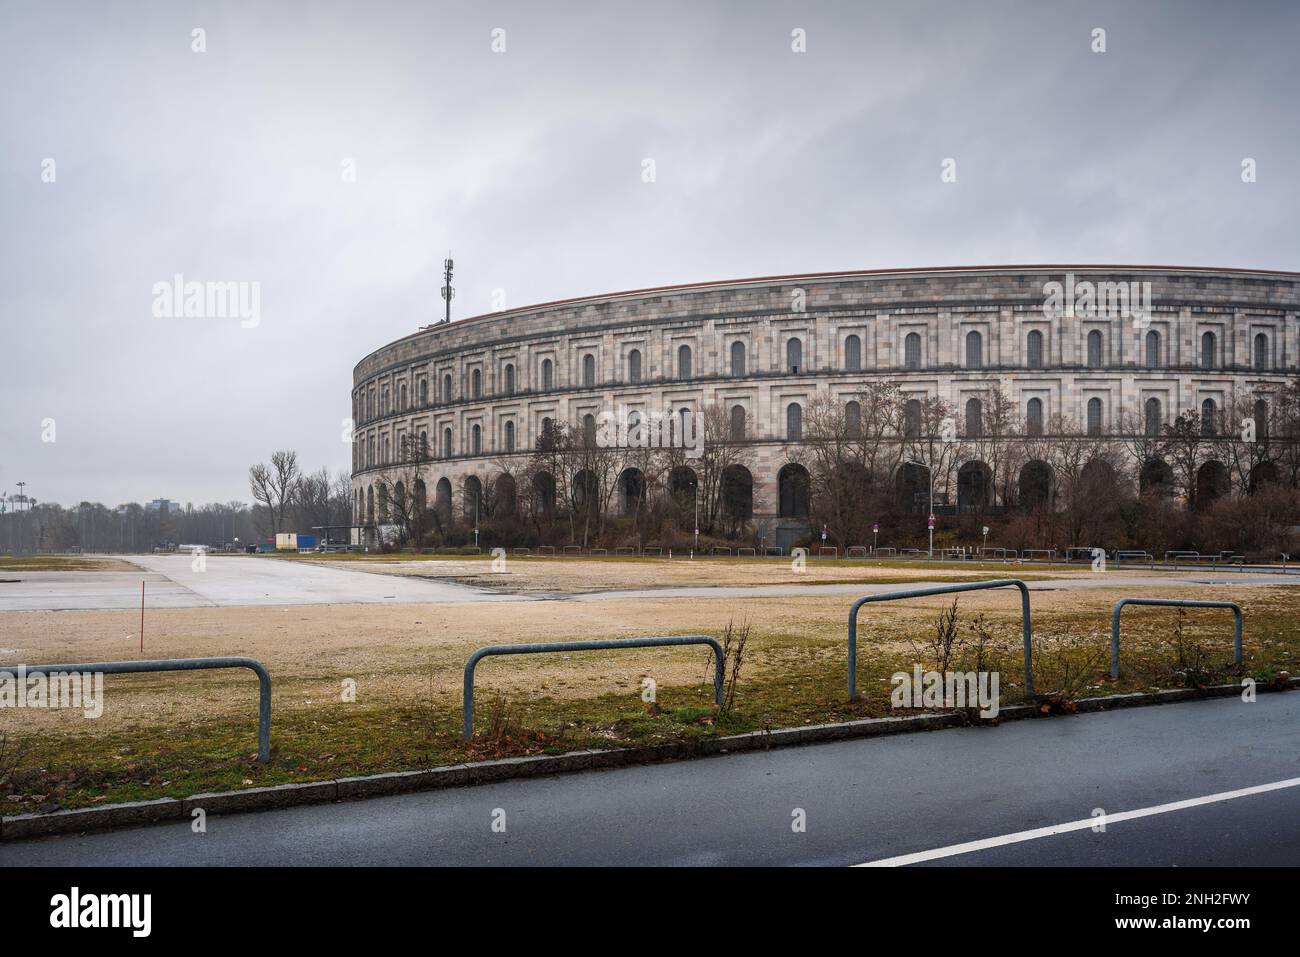 Salle de congrès vue sur les lieux de rassemblement du Parti nazi - Nuremberg, Bavière, Allemagne Banque D'Images